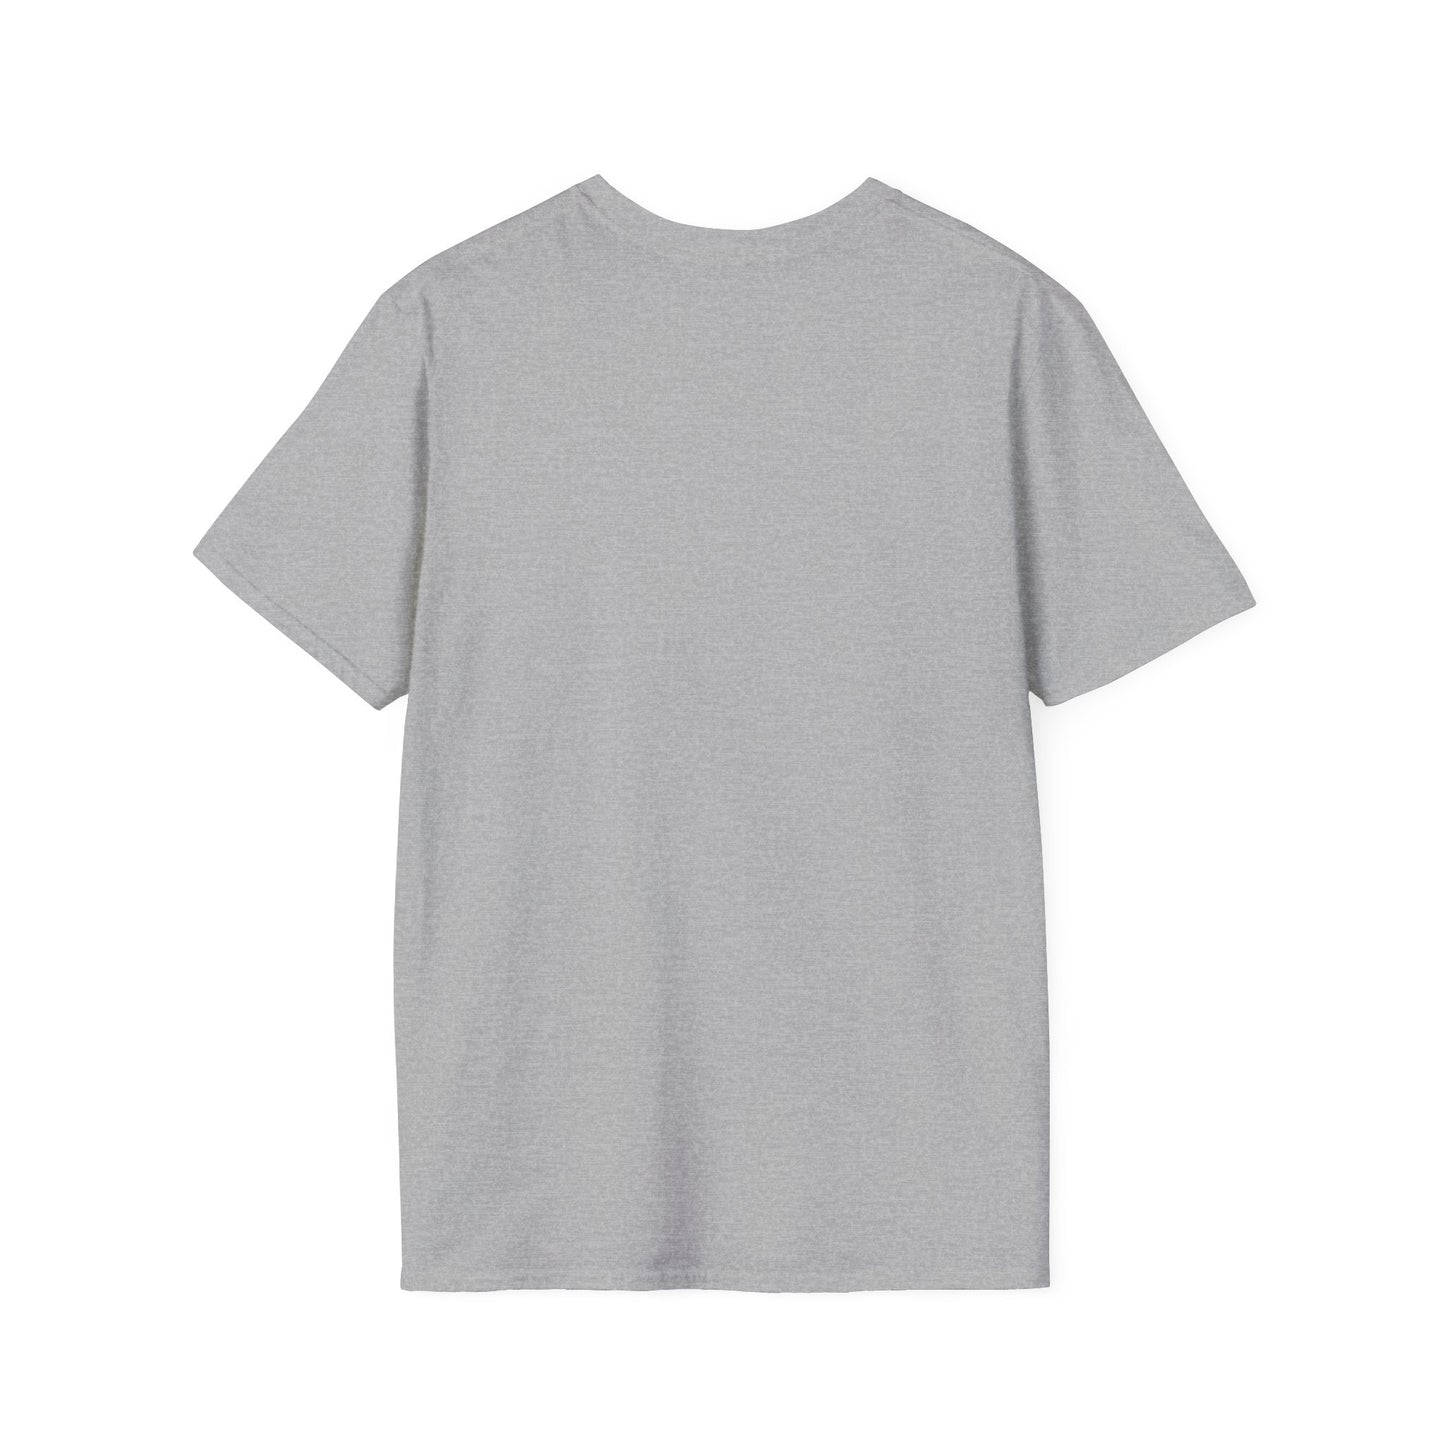 Mama Unisex Softstyle T-Shirt